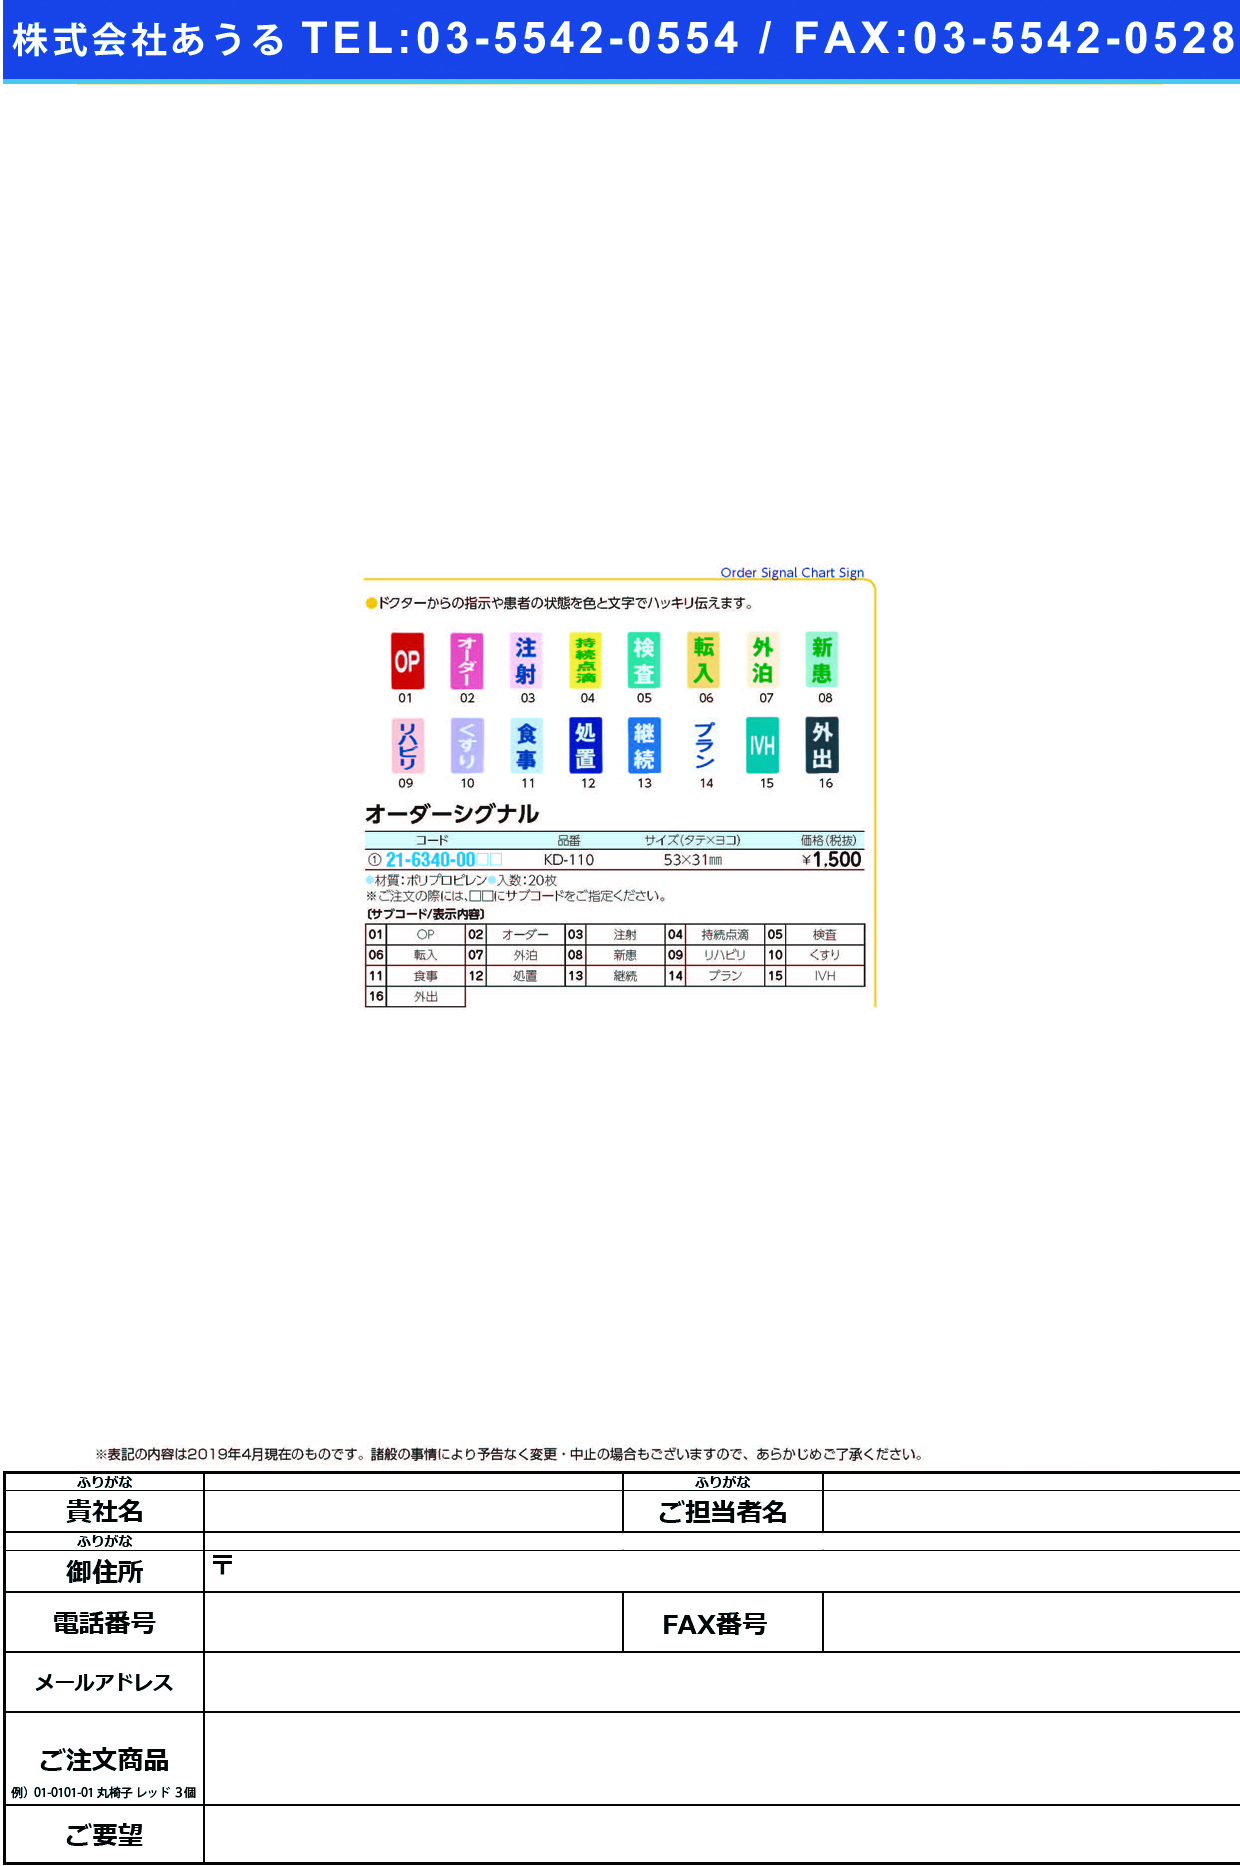 (21-6340-00)オーダーシグナル KD-110(20ﾏｲｲﾘ) ｵｰﾀﾞｰｼｸﾞﾅﾙ 外出(ケルン)【1袋単位】【2019年カタログ商品】